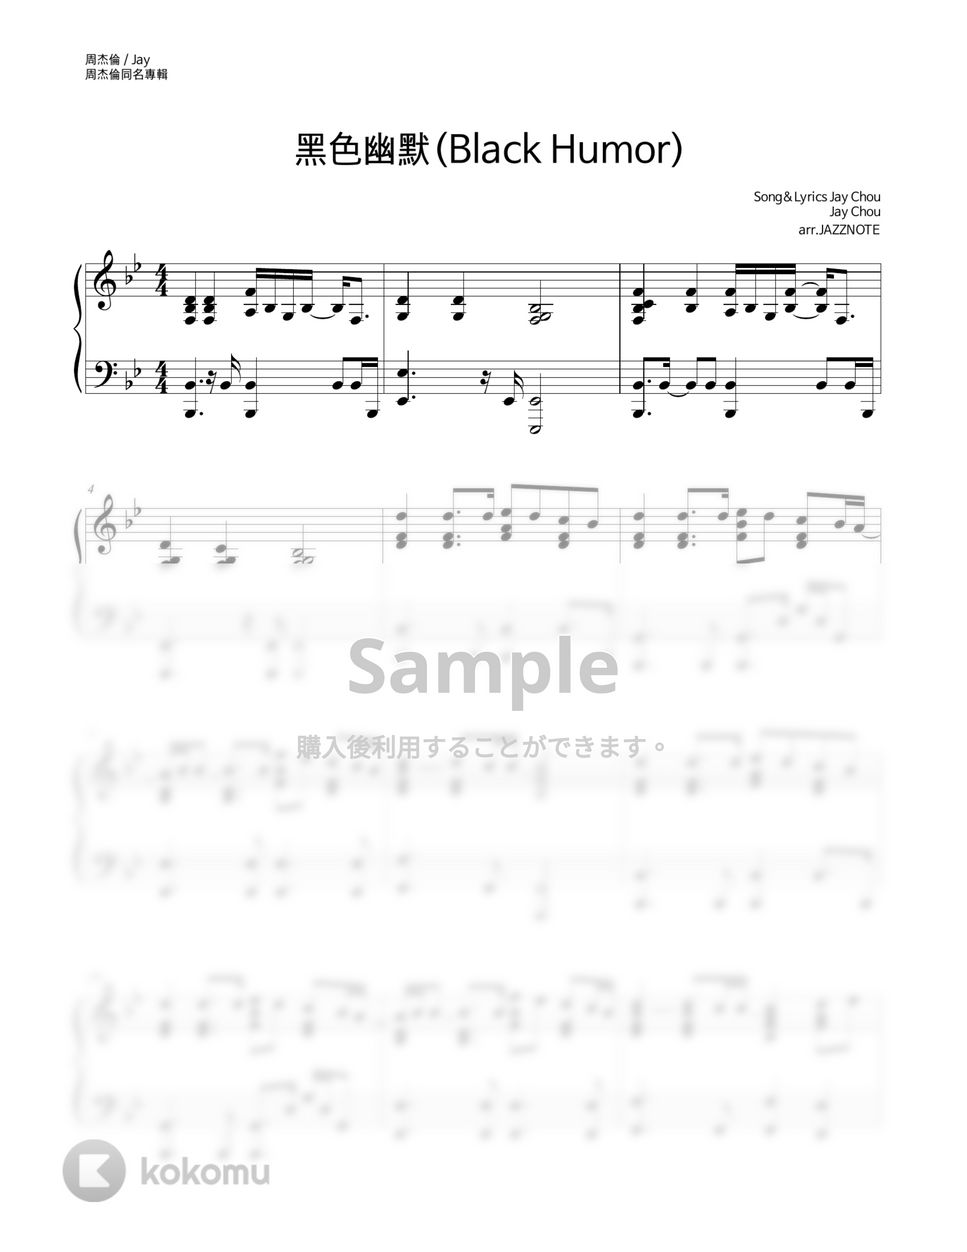 周杰倫(Jay Chou) - 黑色幽默(Black Humor) by JAZZNOTE